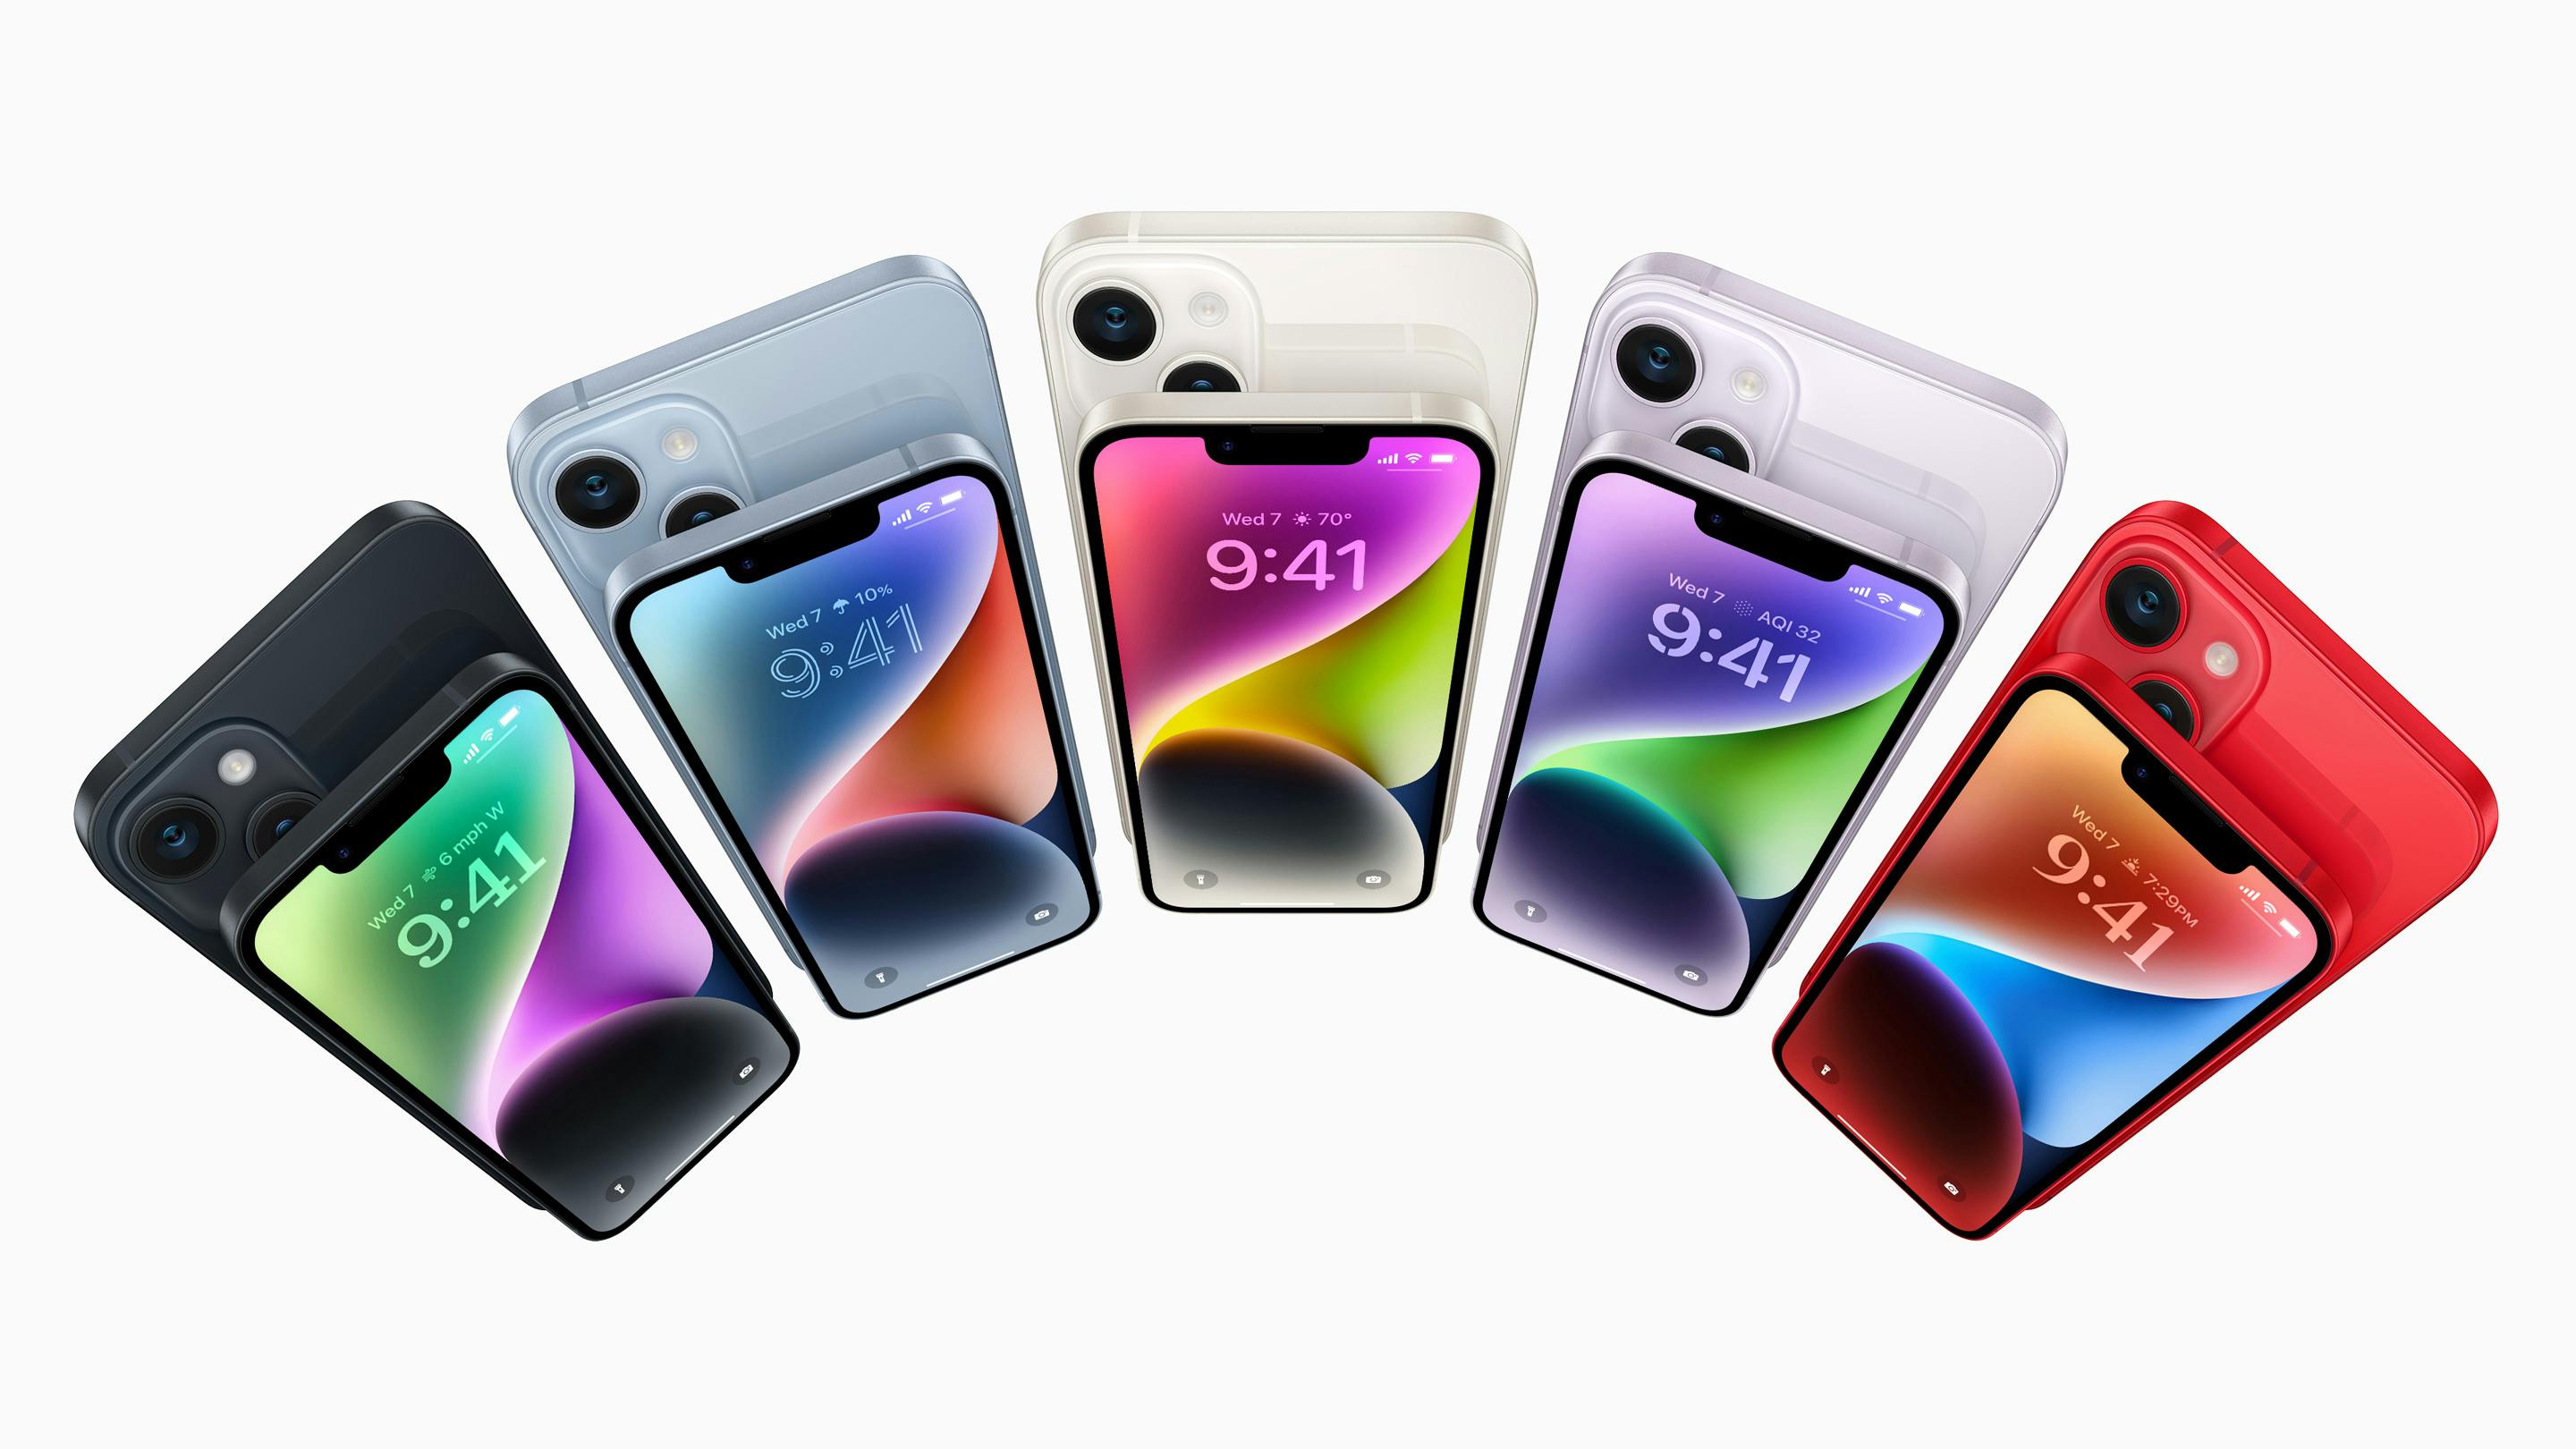 Sådan ser farvemulighederne ud i iPhone 14 med 6,1 tommers display og iPhone 14 Plus med 6,7 tommers display.